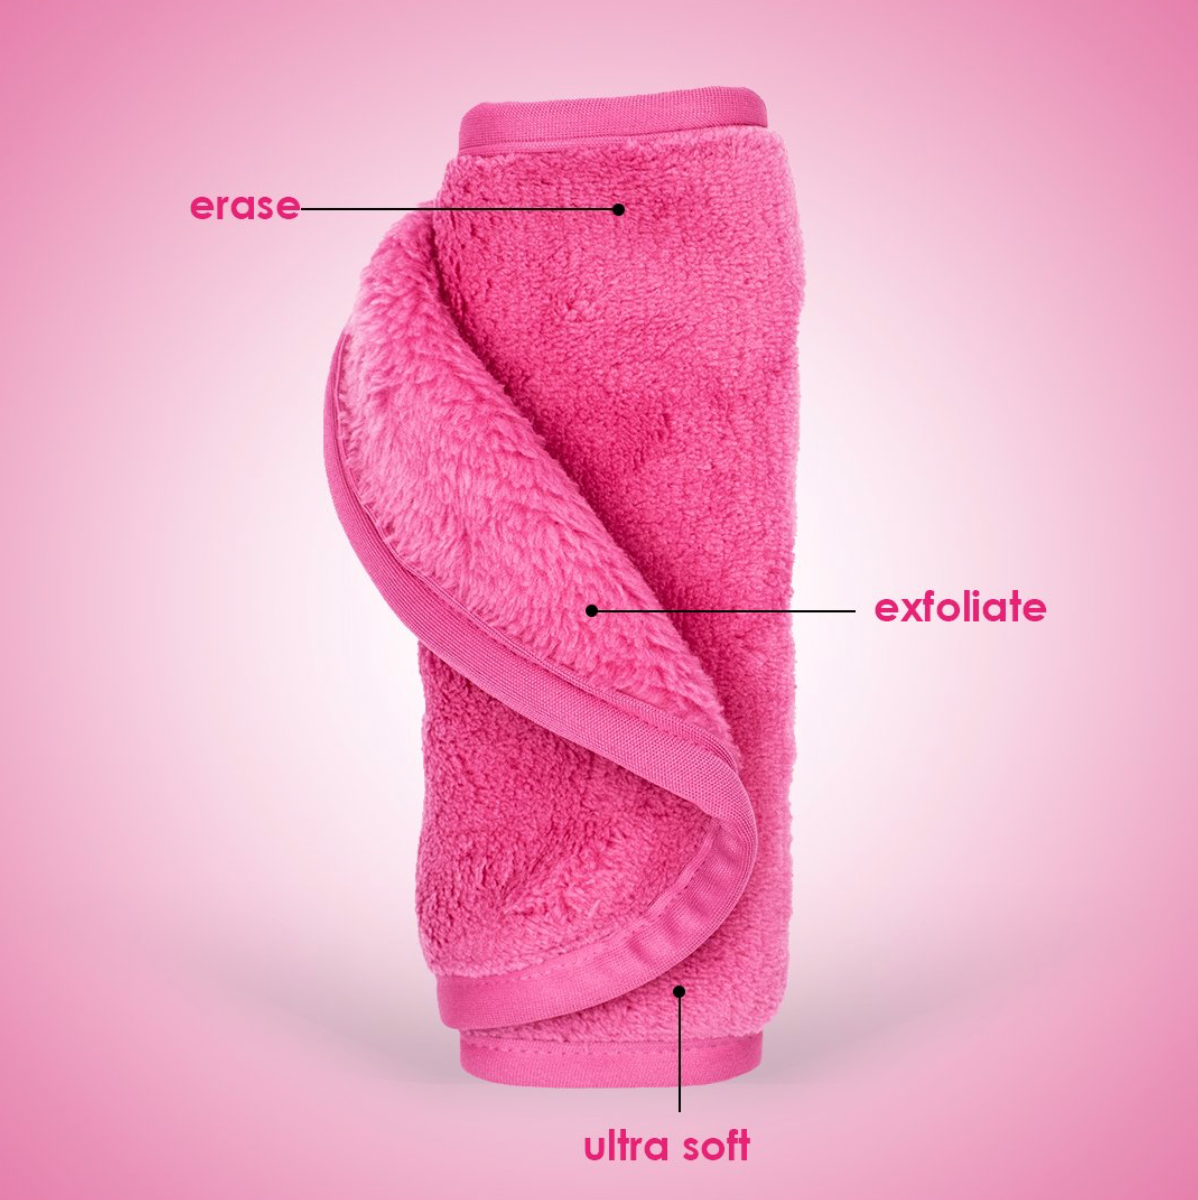 Makeup Eraser: Original Pink